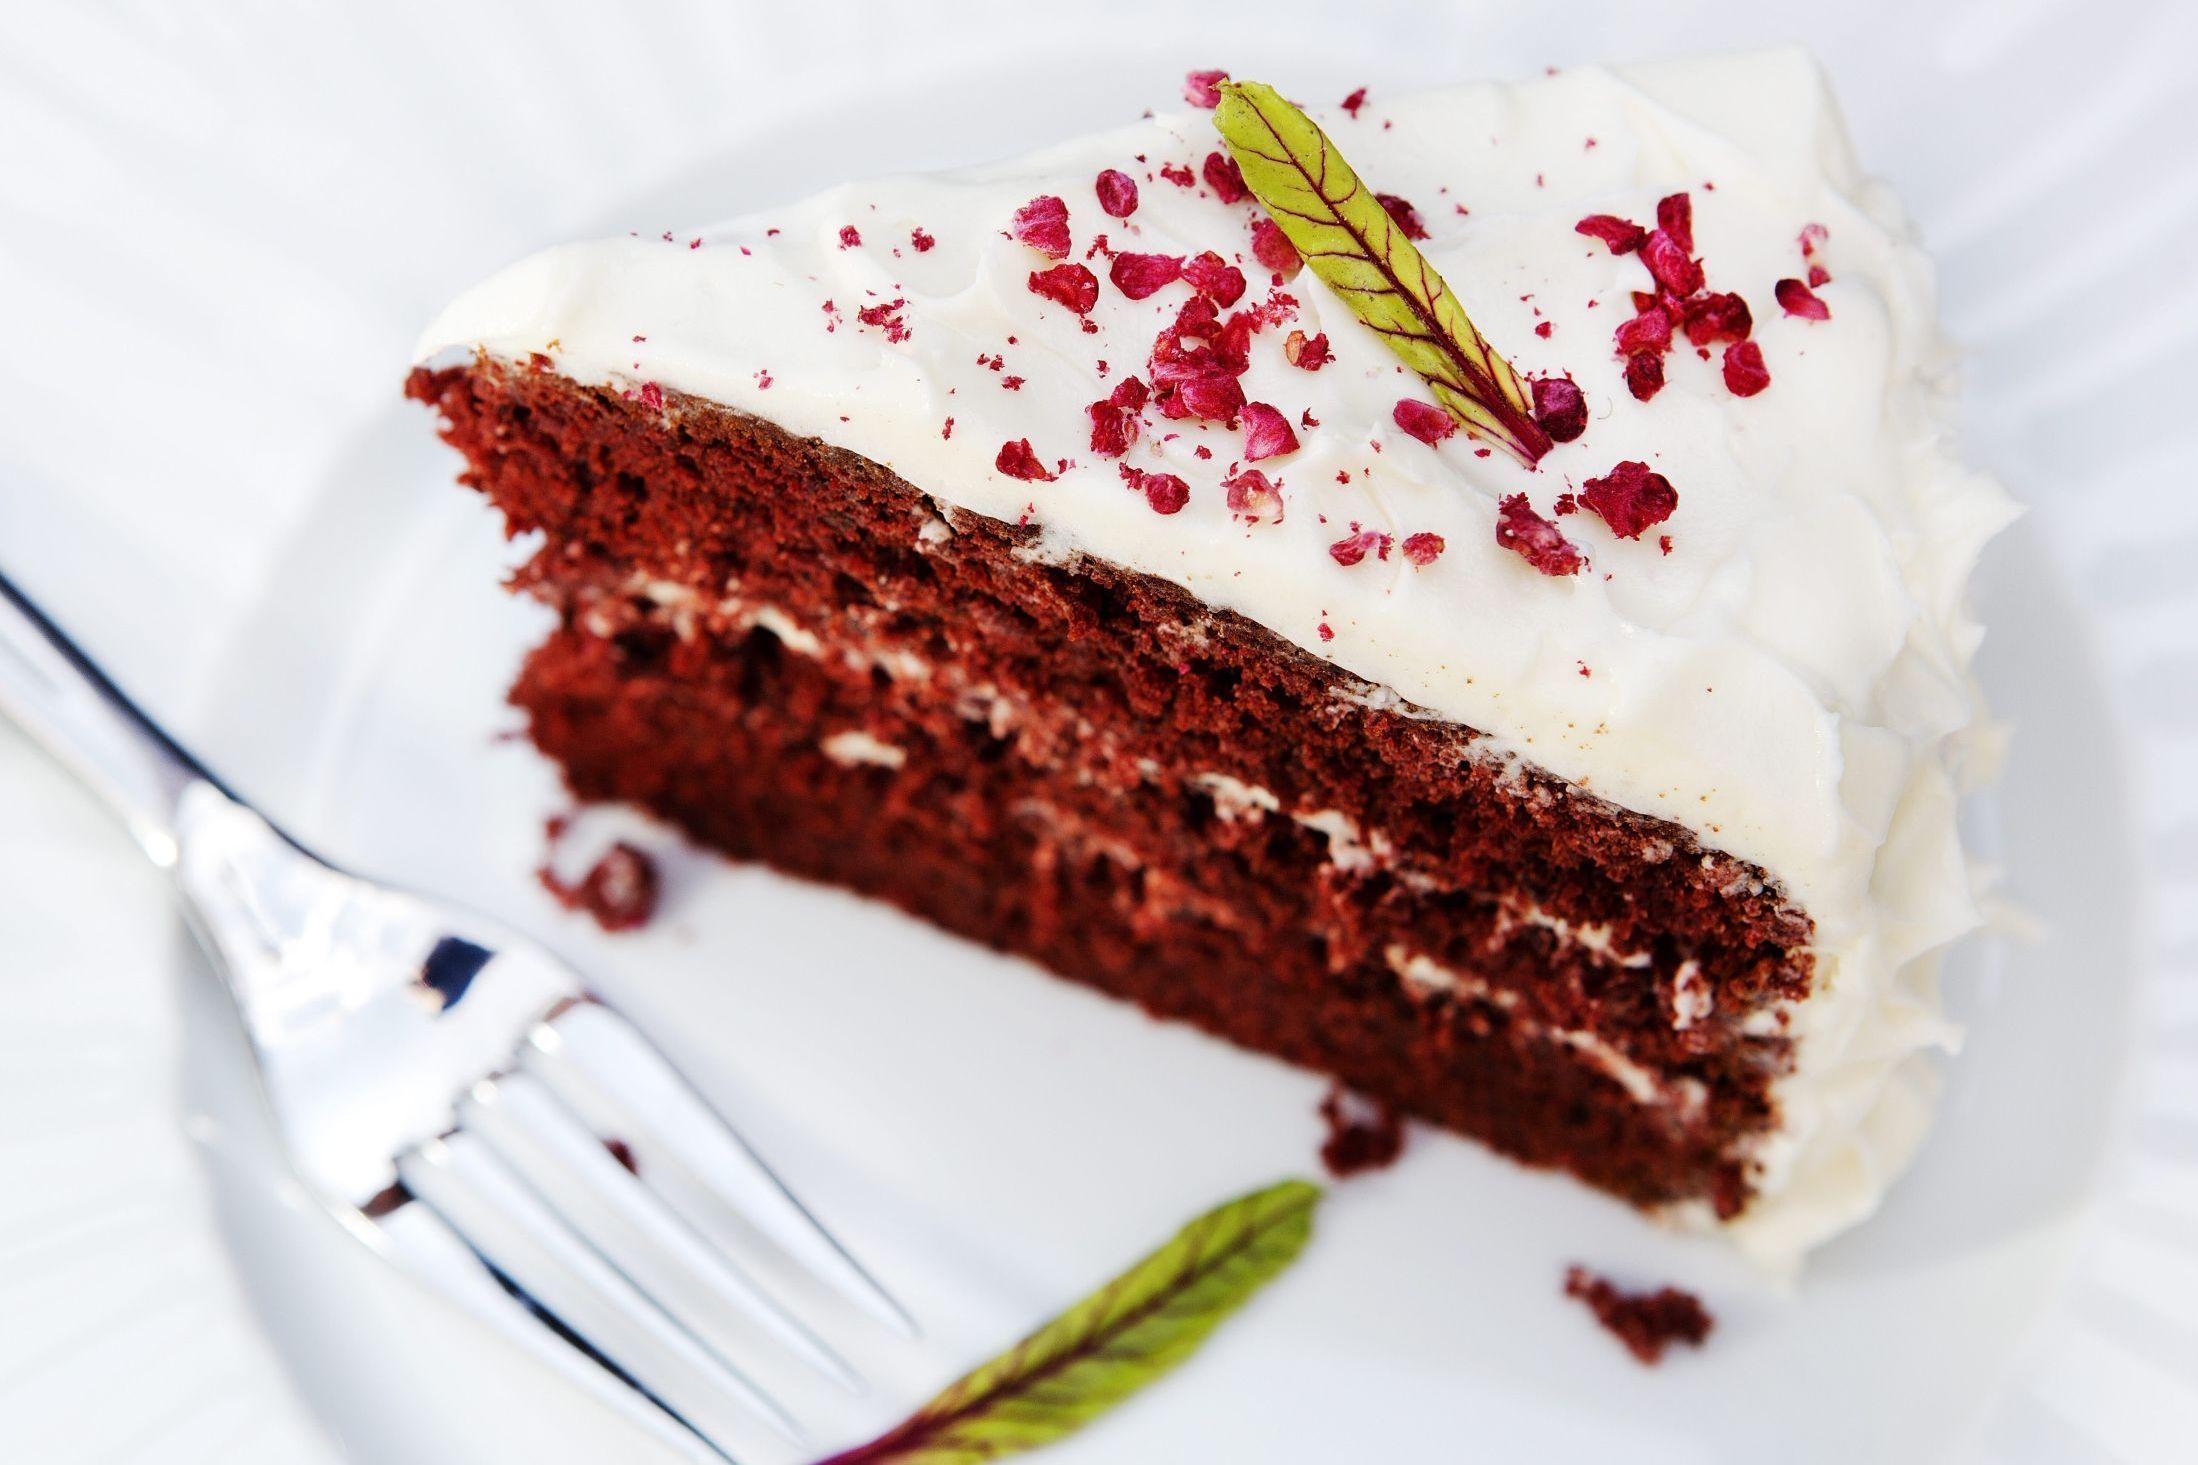 SØTT OG RØDT: Rødbeter kan også brukes i sjokoladekaken. Foto: Magnar Kirknes/VG